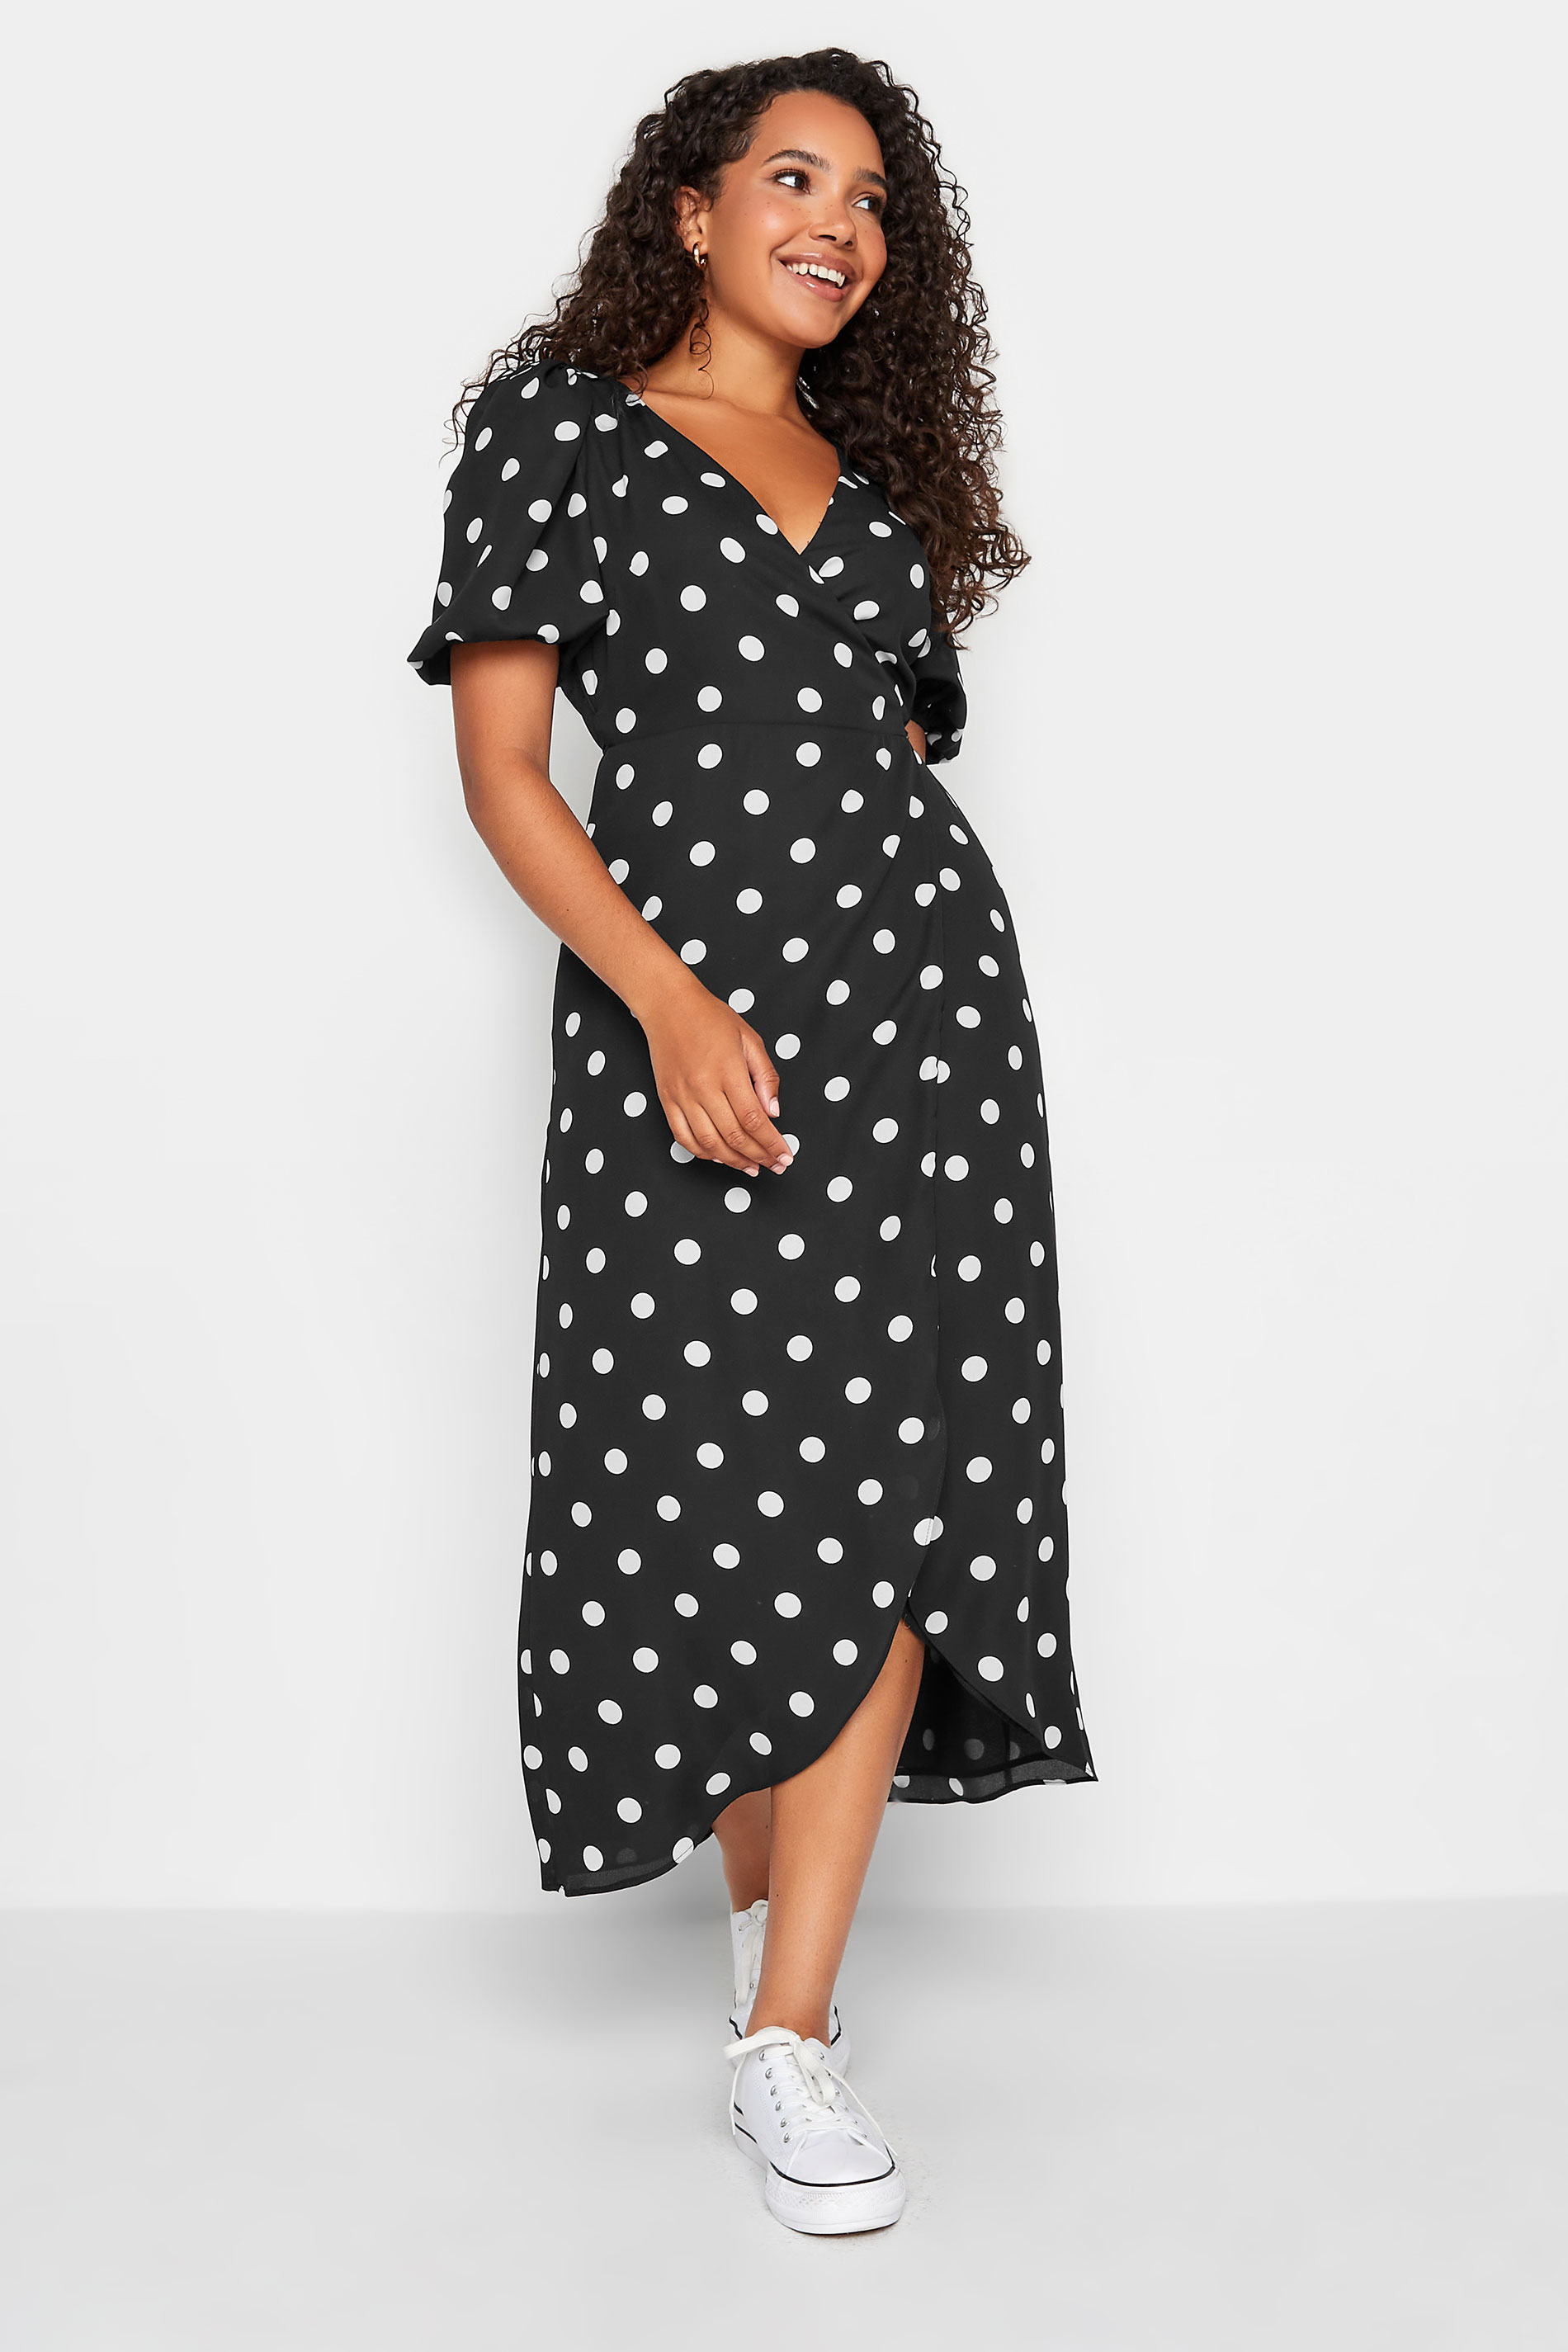 M&Co Black Polka Dot Wrap Dress | M&Co  1